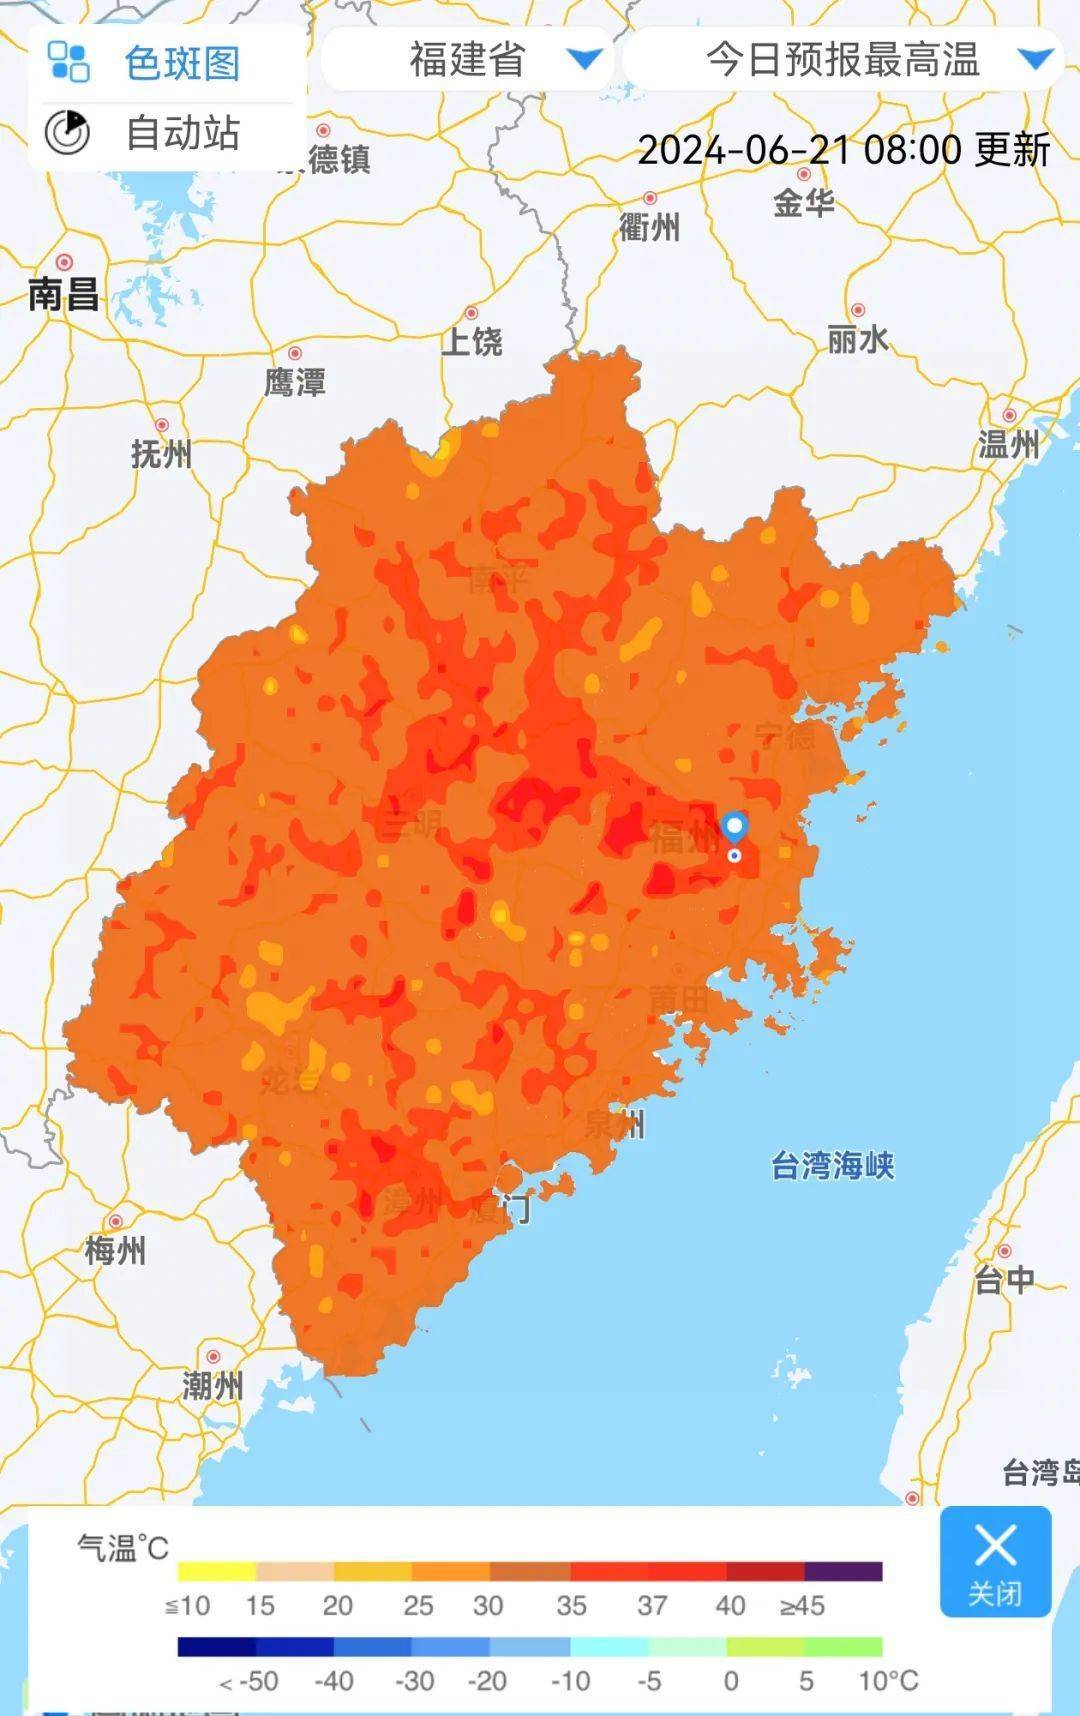 纯白色的中国地图图片